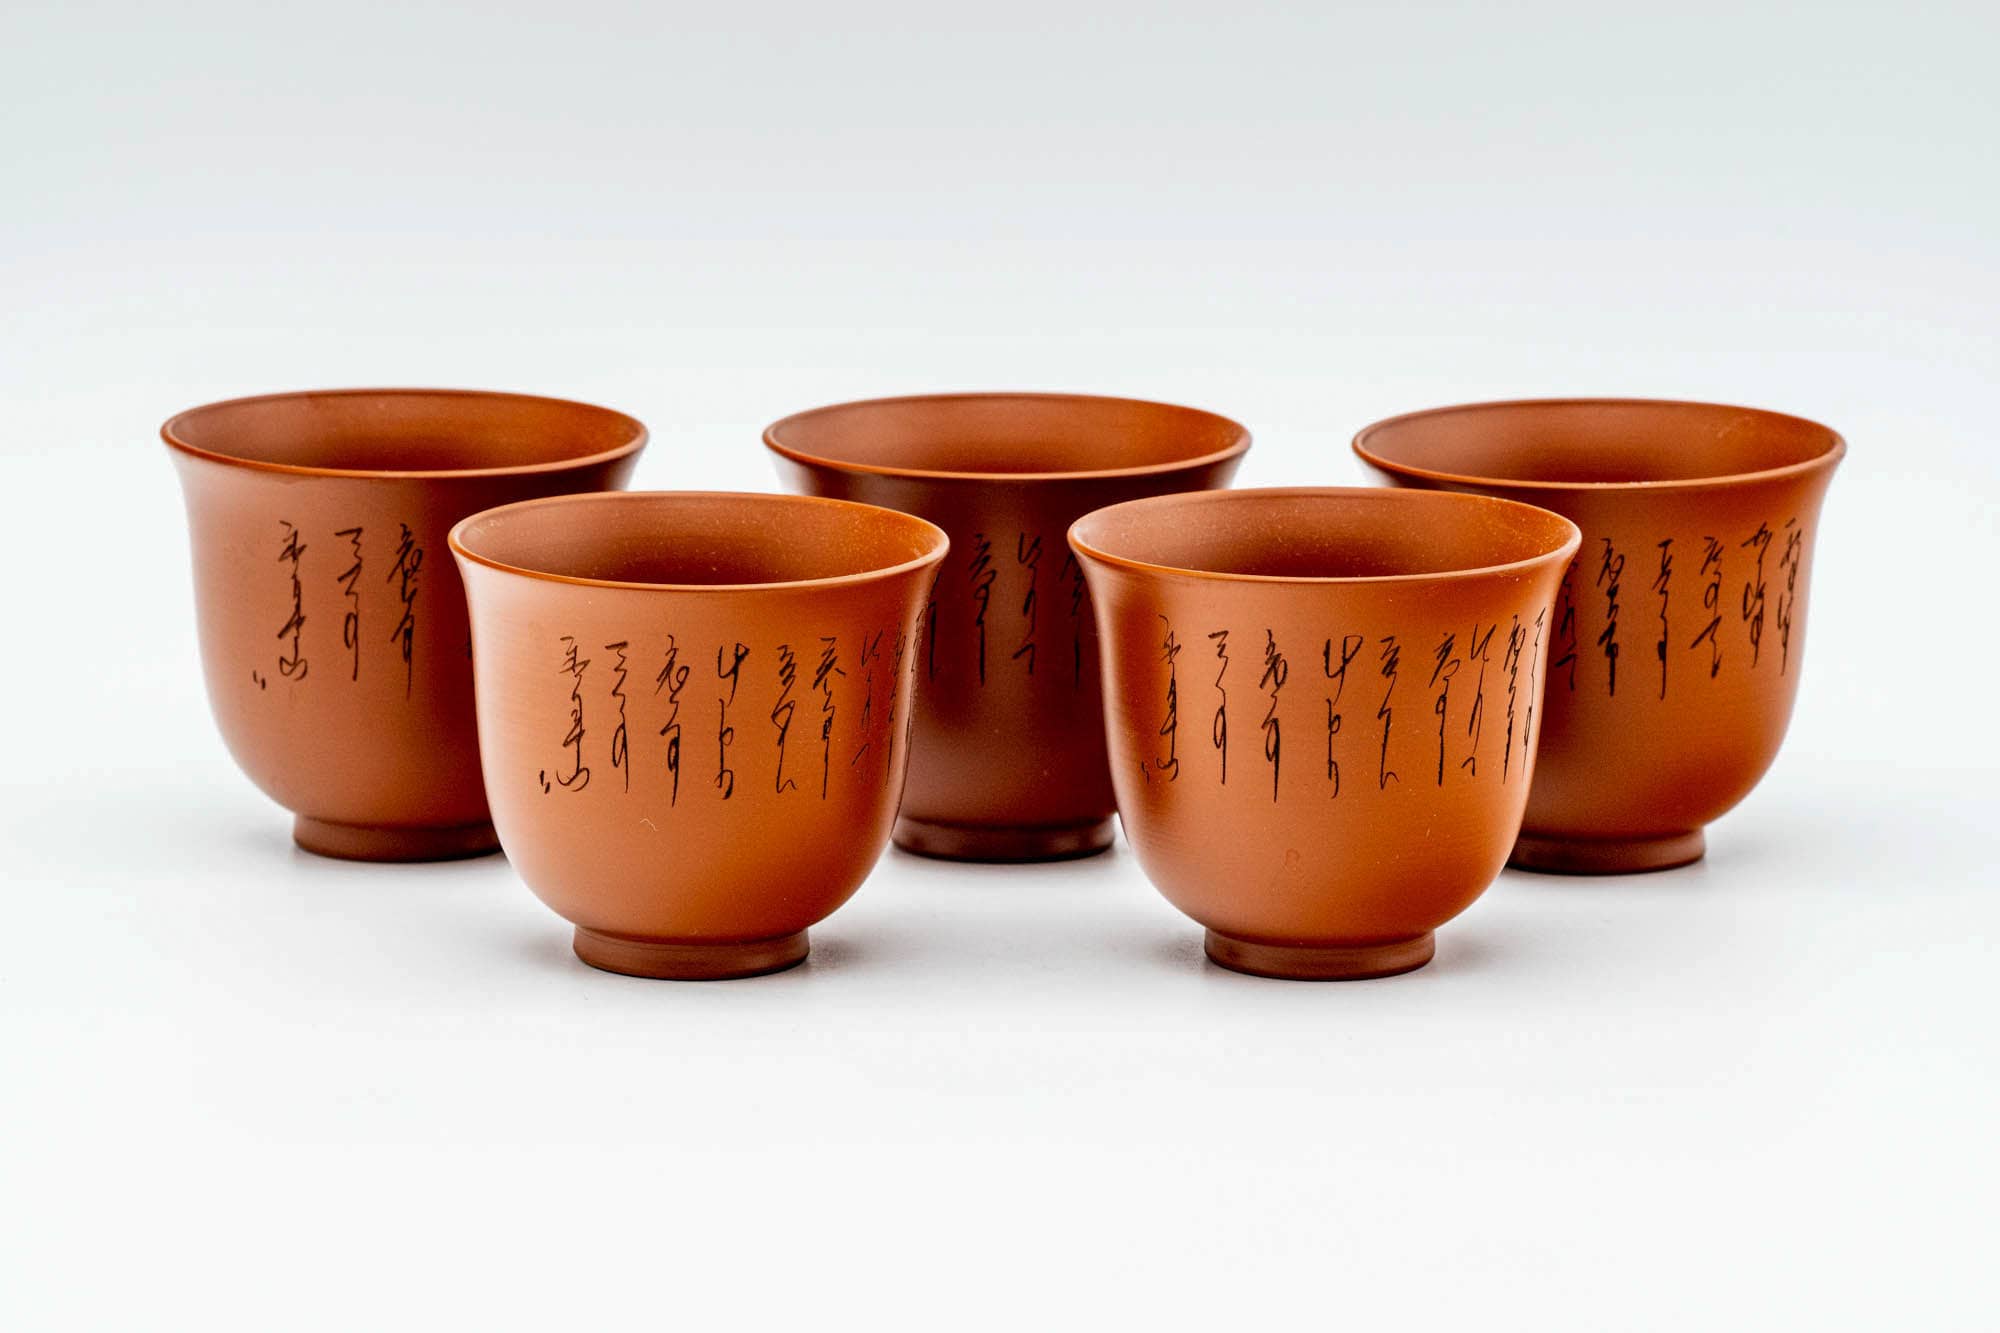 Japanese Tea Set - Calligraphy Engraved Tokoname-yaki Kyusu Teapot - Katakuchi Water Cooler - 5 Yunomi Teacups